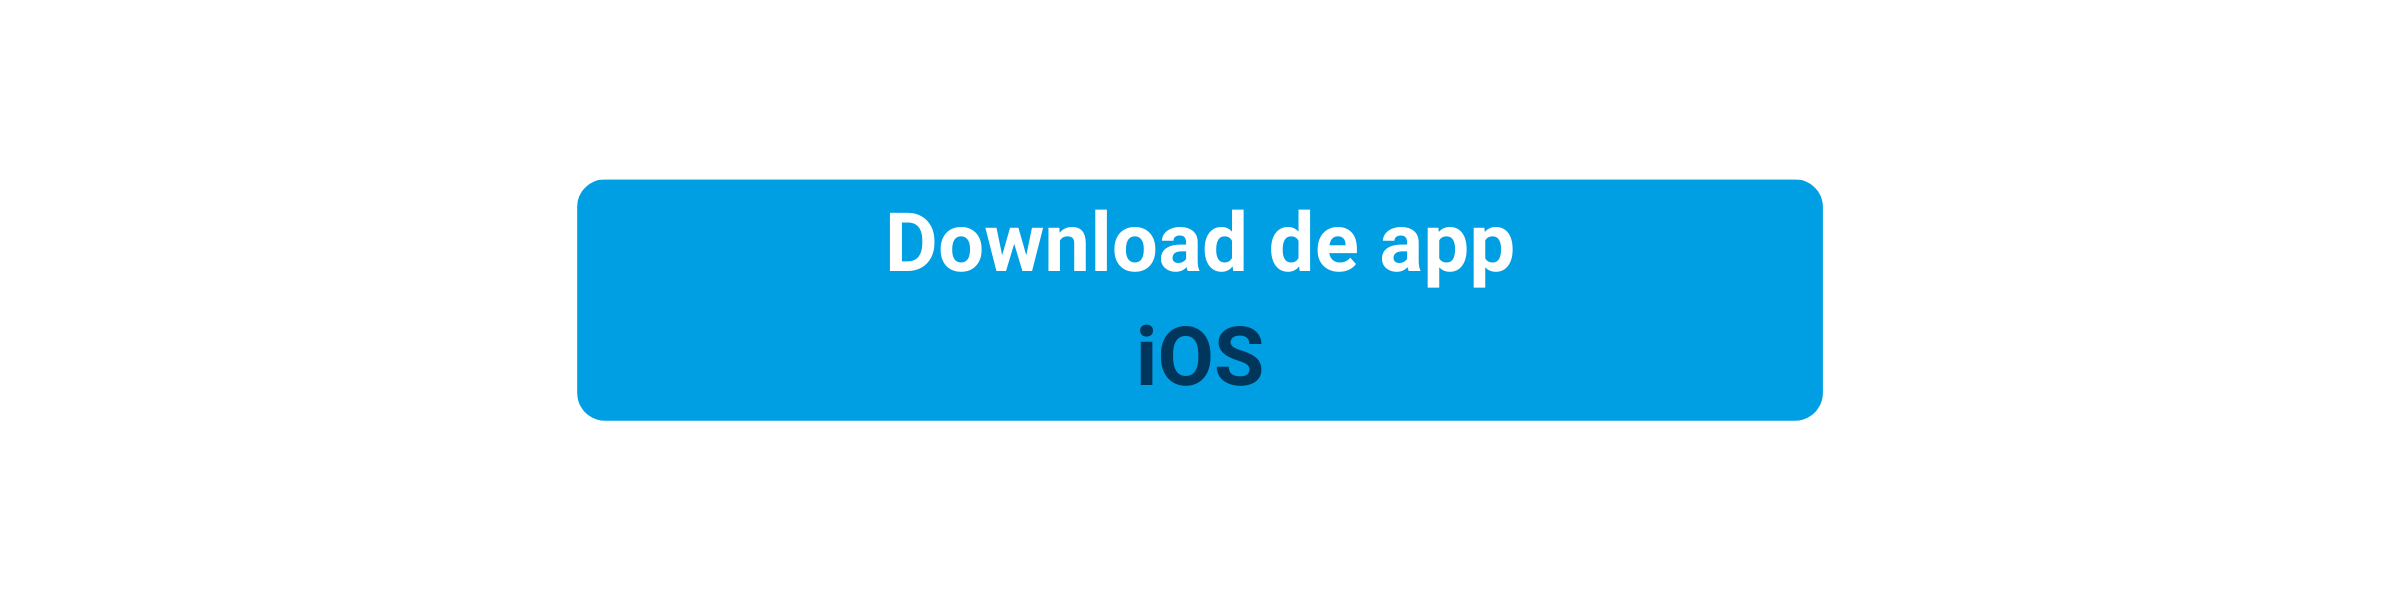 CTA_download_iOS_NL.png